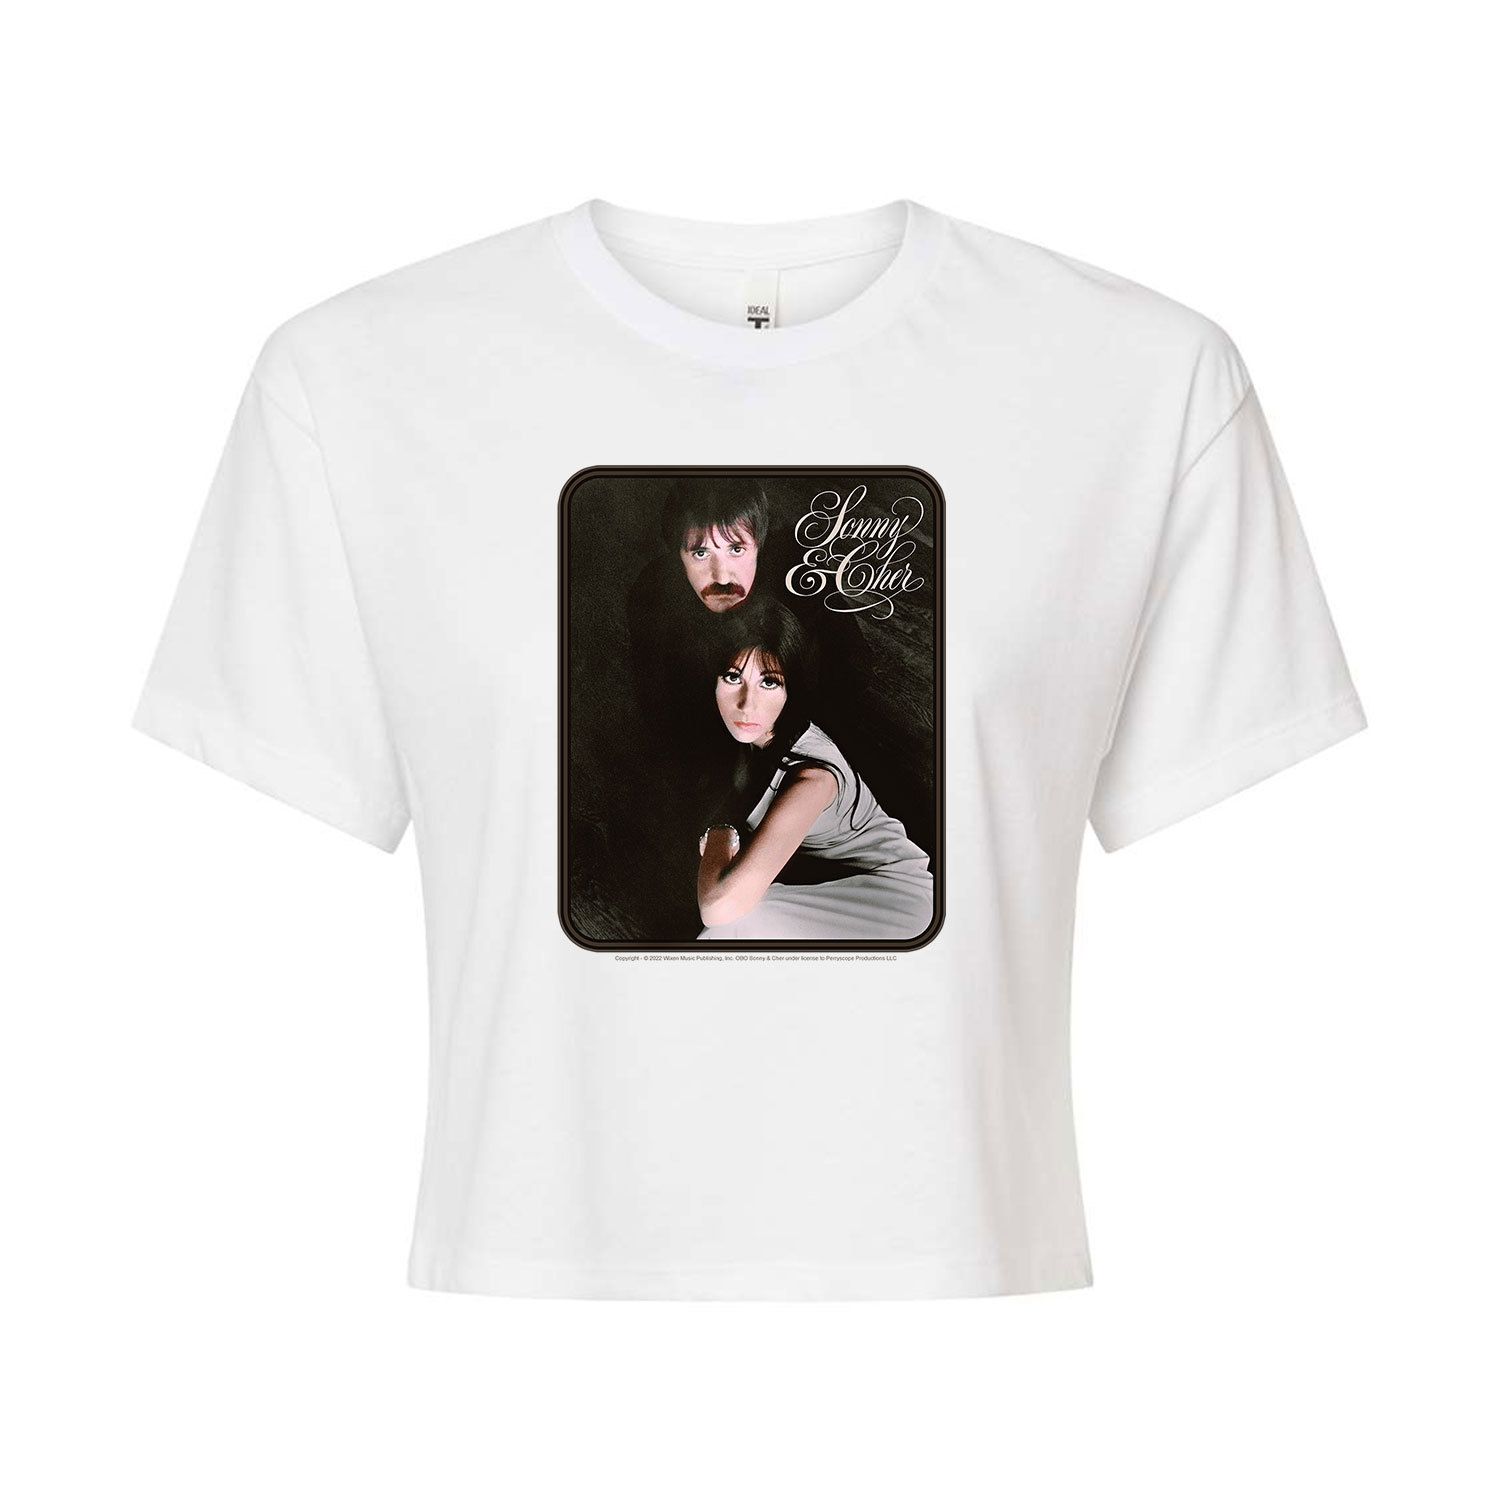 Укороченная футболка с рисунком Sonny & Cher для юниоров Licensed Character, белый